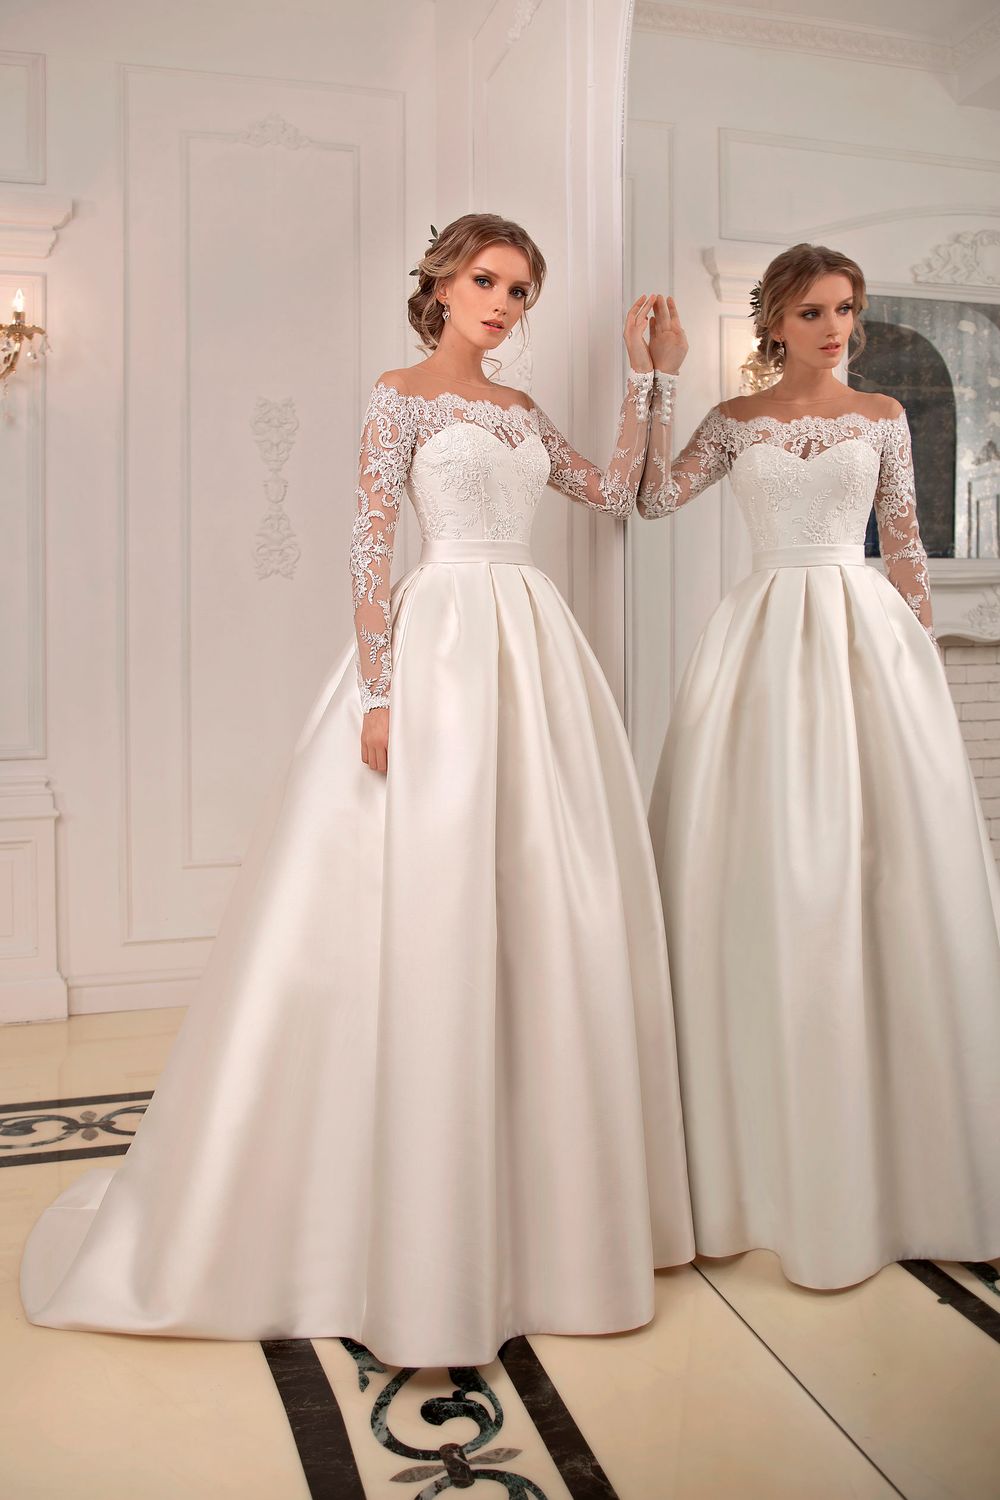 Самые модные свадебные платья этого сезона: 4 стильных решения